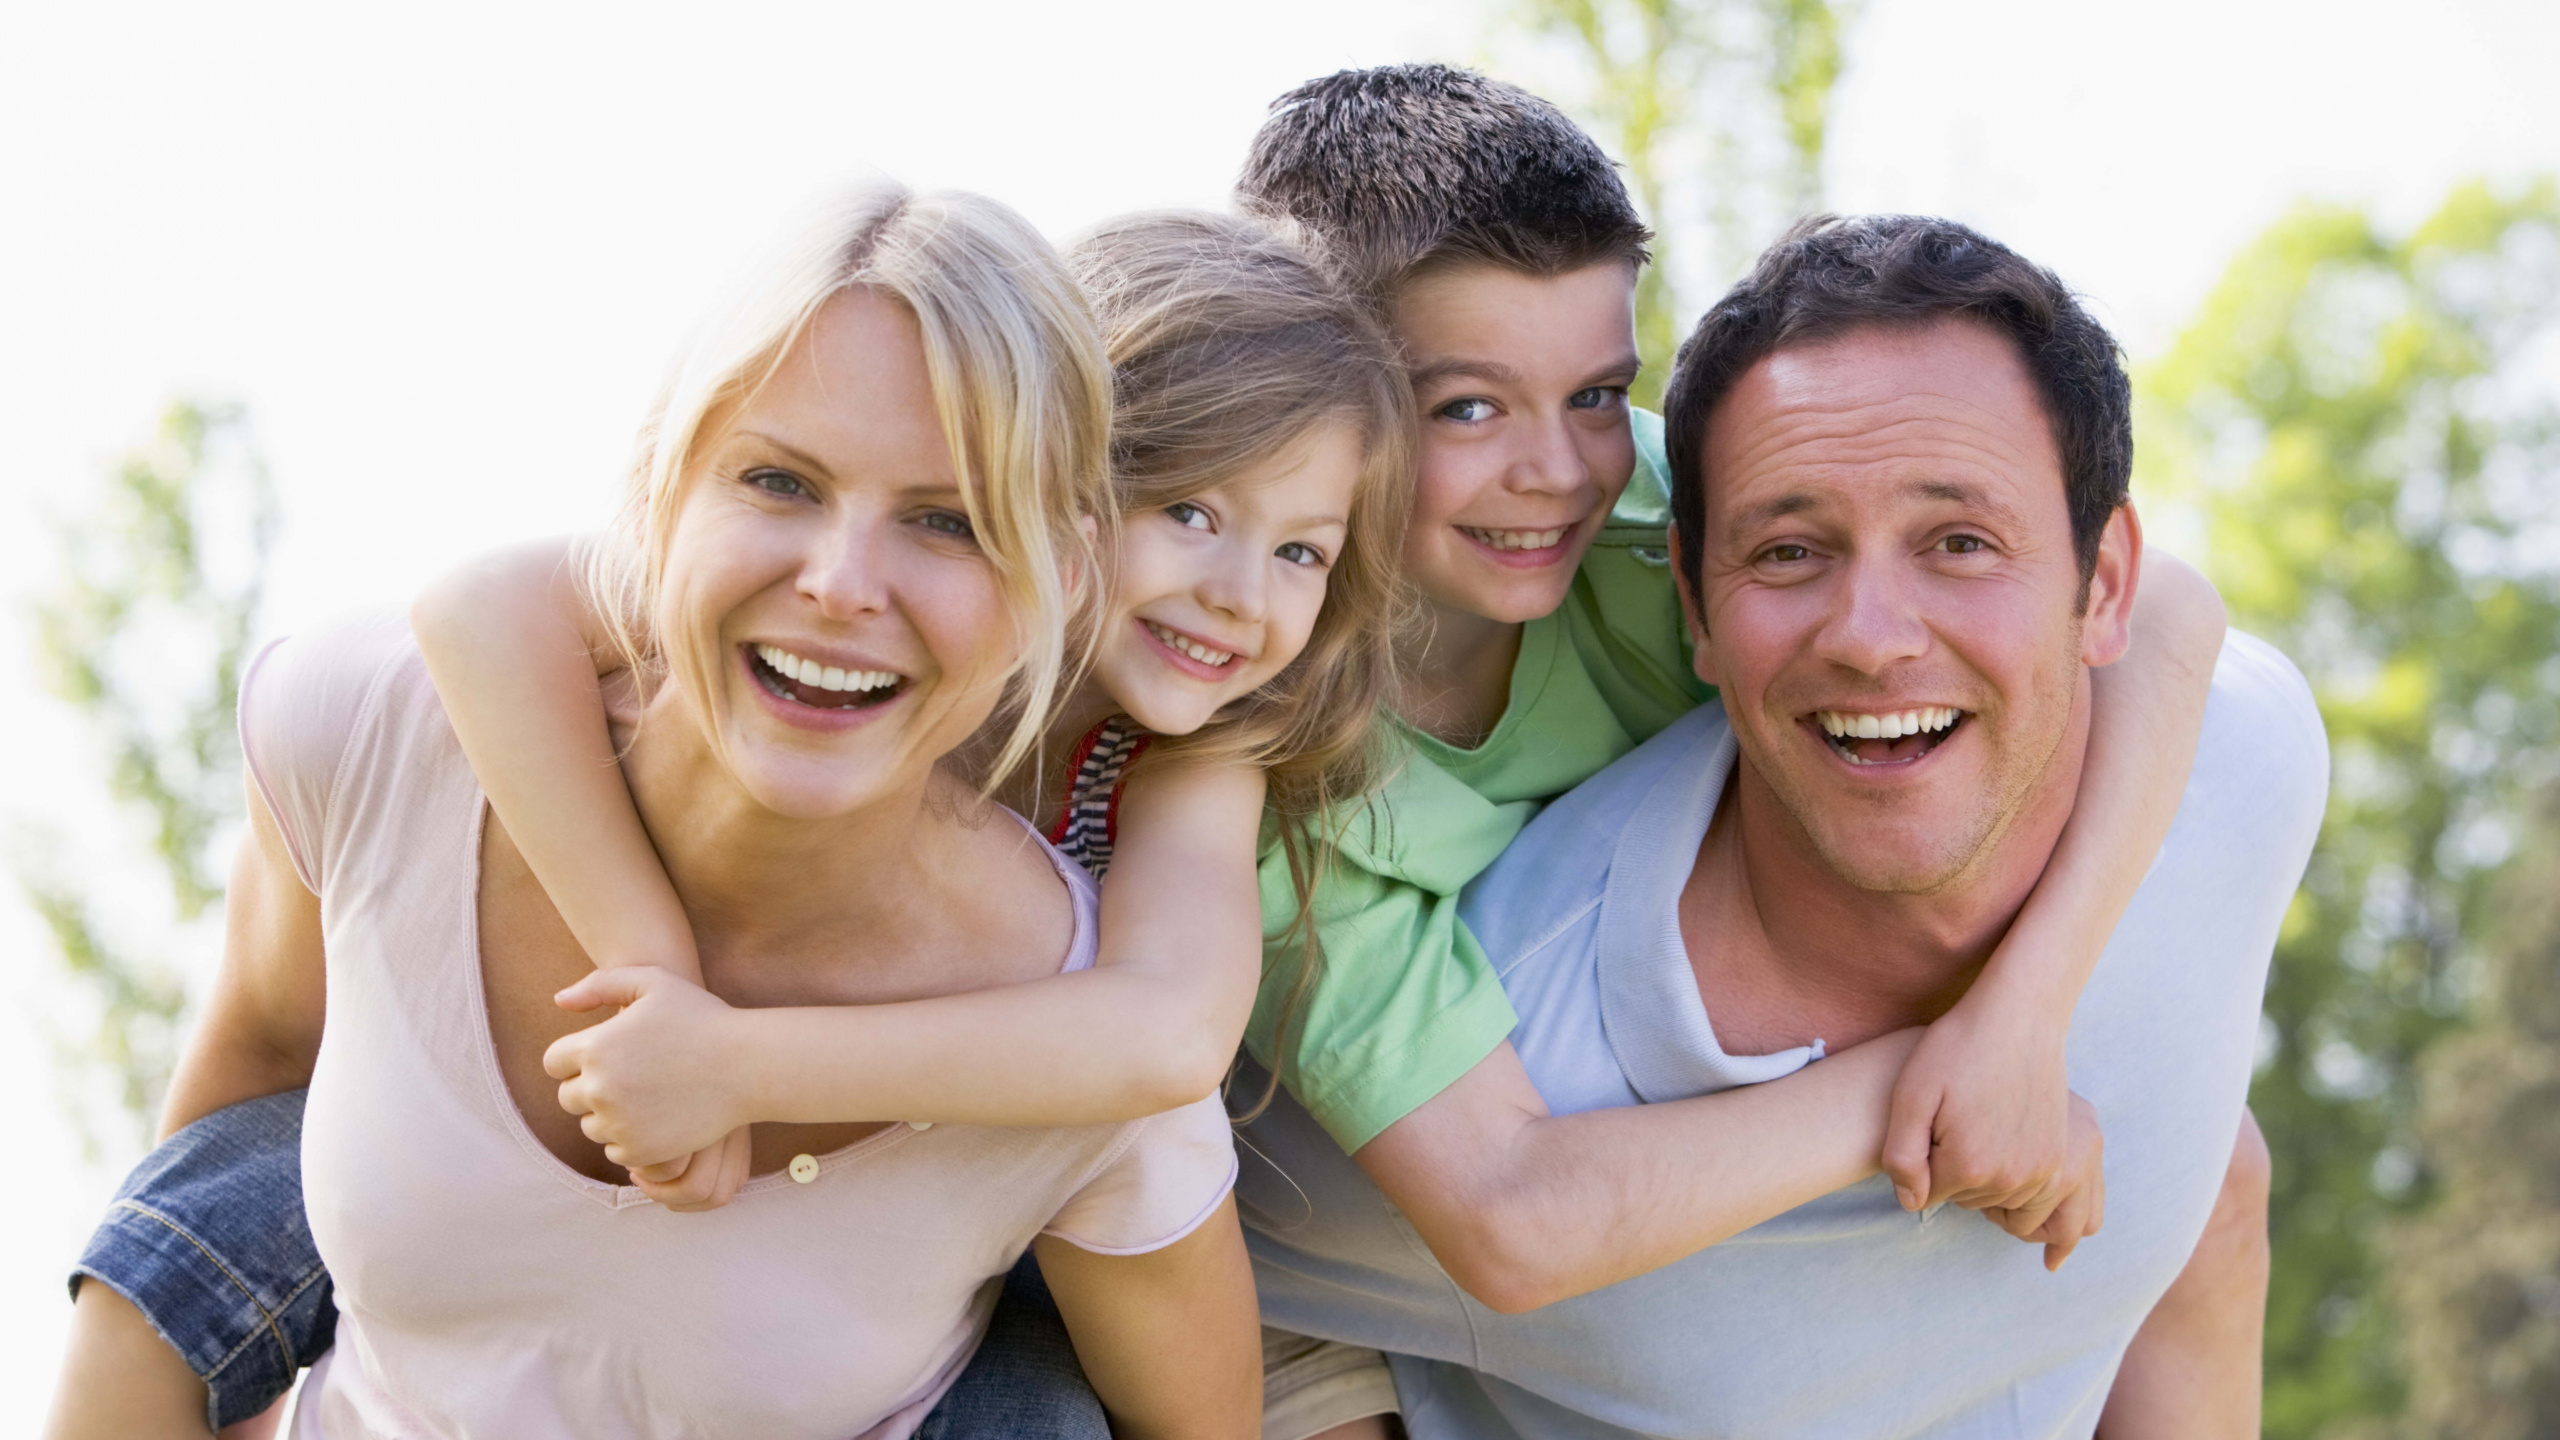 家庭, 面部表情, 乐趣, 为人父母, 情感 壁纸 2560x1440 允许